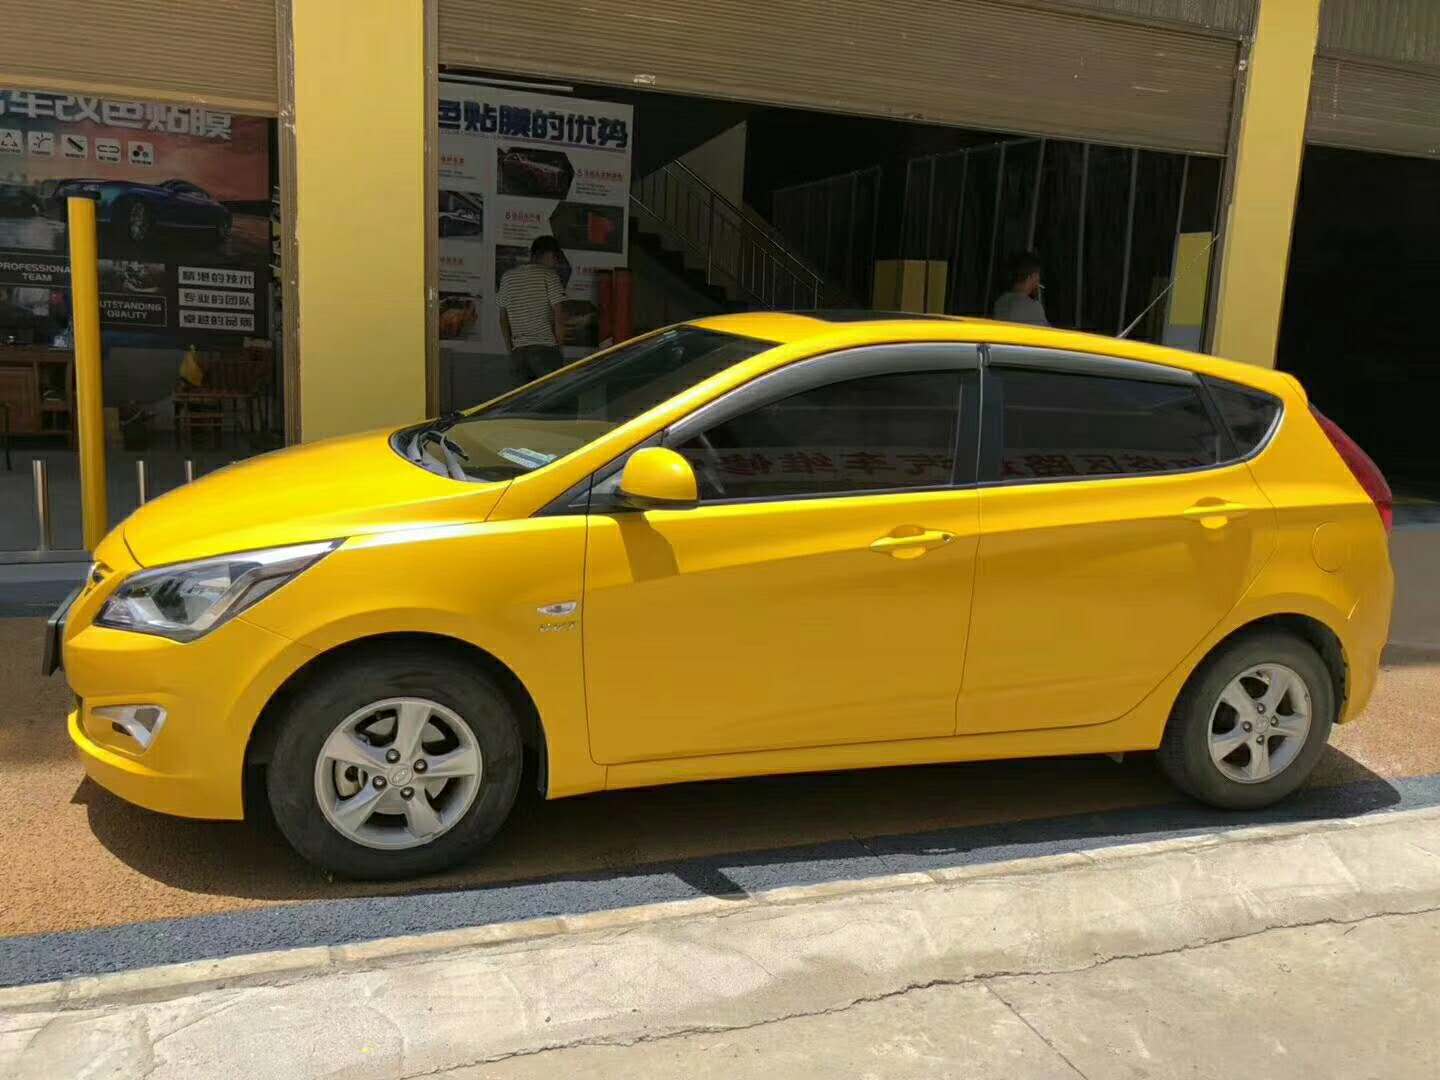 北京现代黄颜色的车型图片